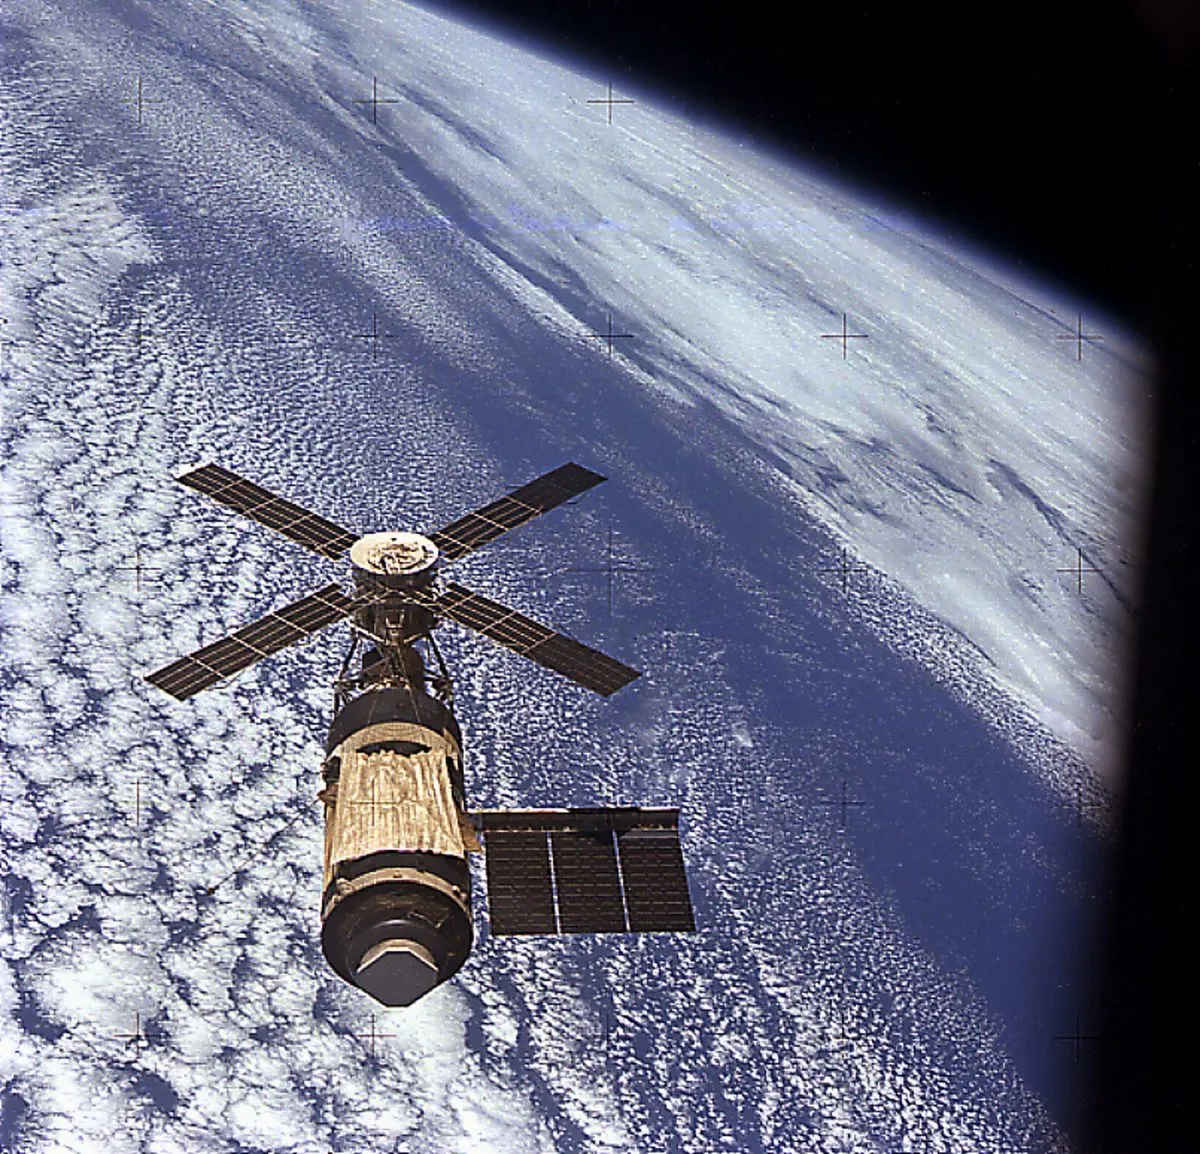 The Skylab space station in orbit. Credit: NASA